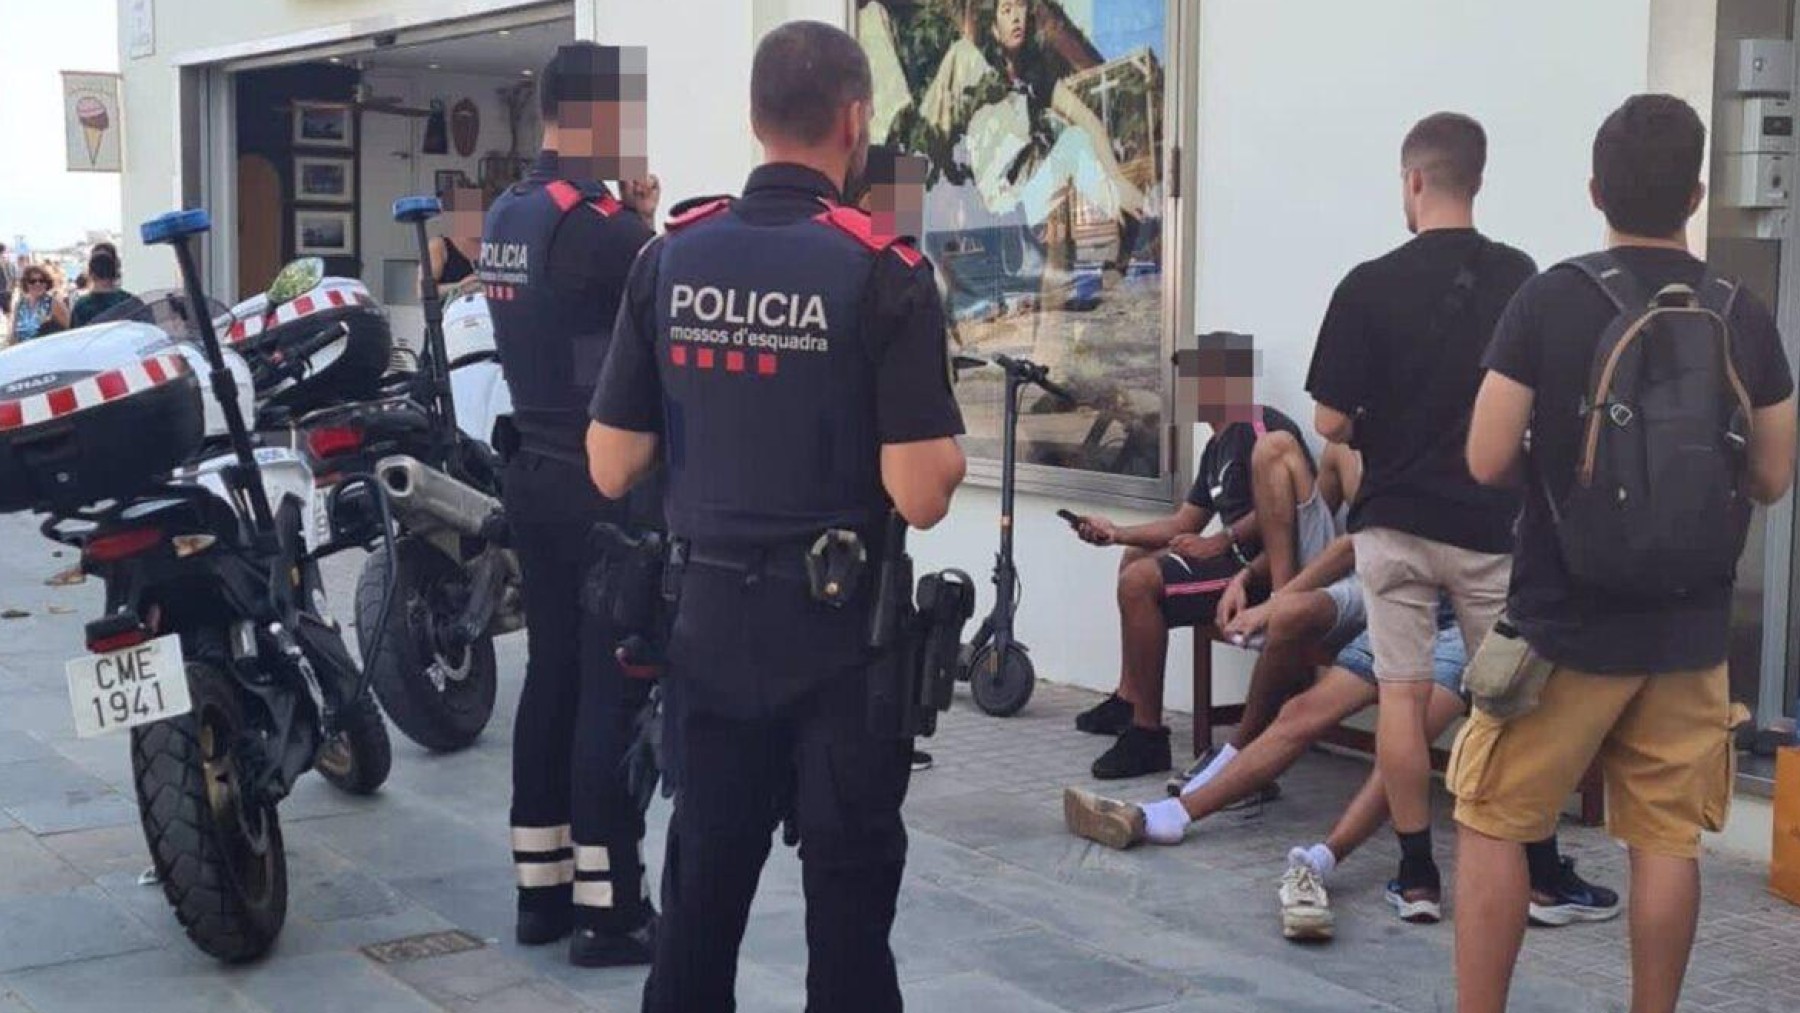 Mosso d’Esquadra durante un control policial en Gerona. Fuente: redes sociales.